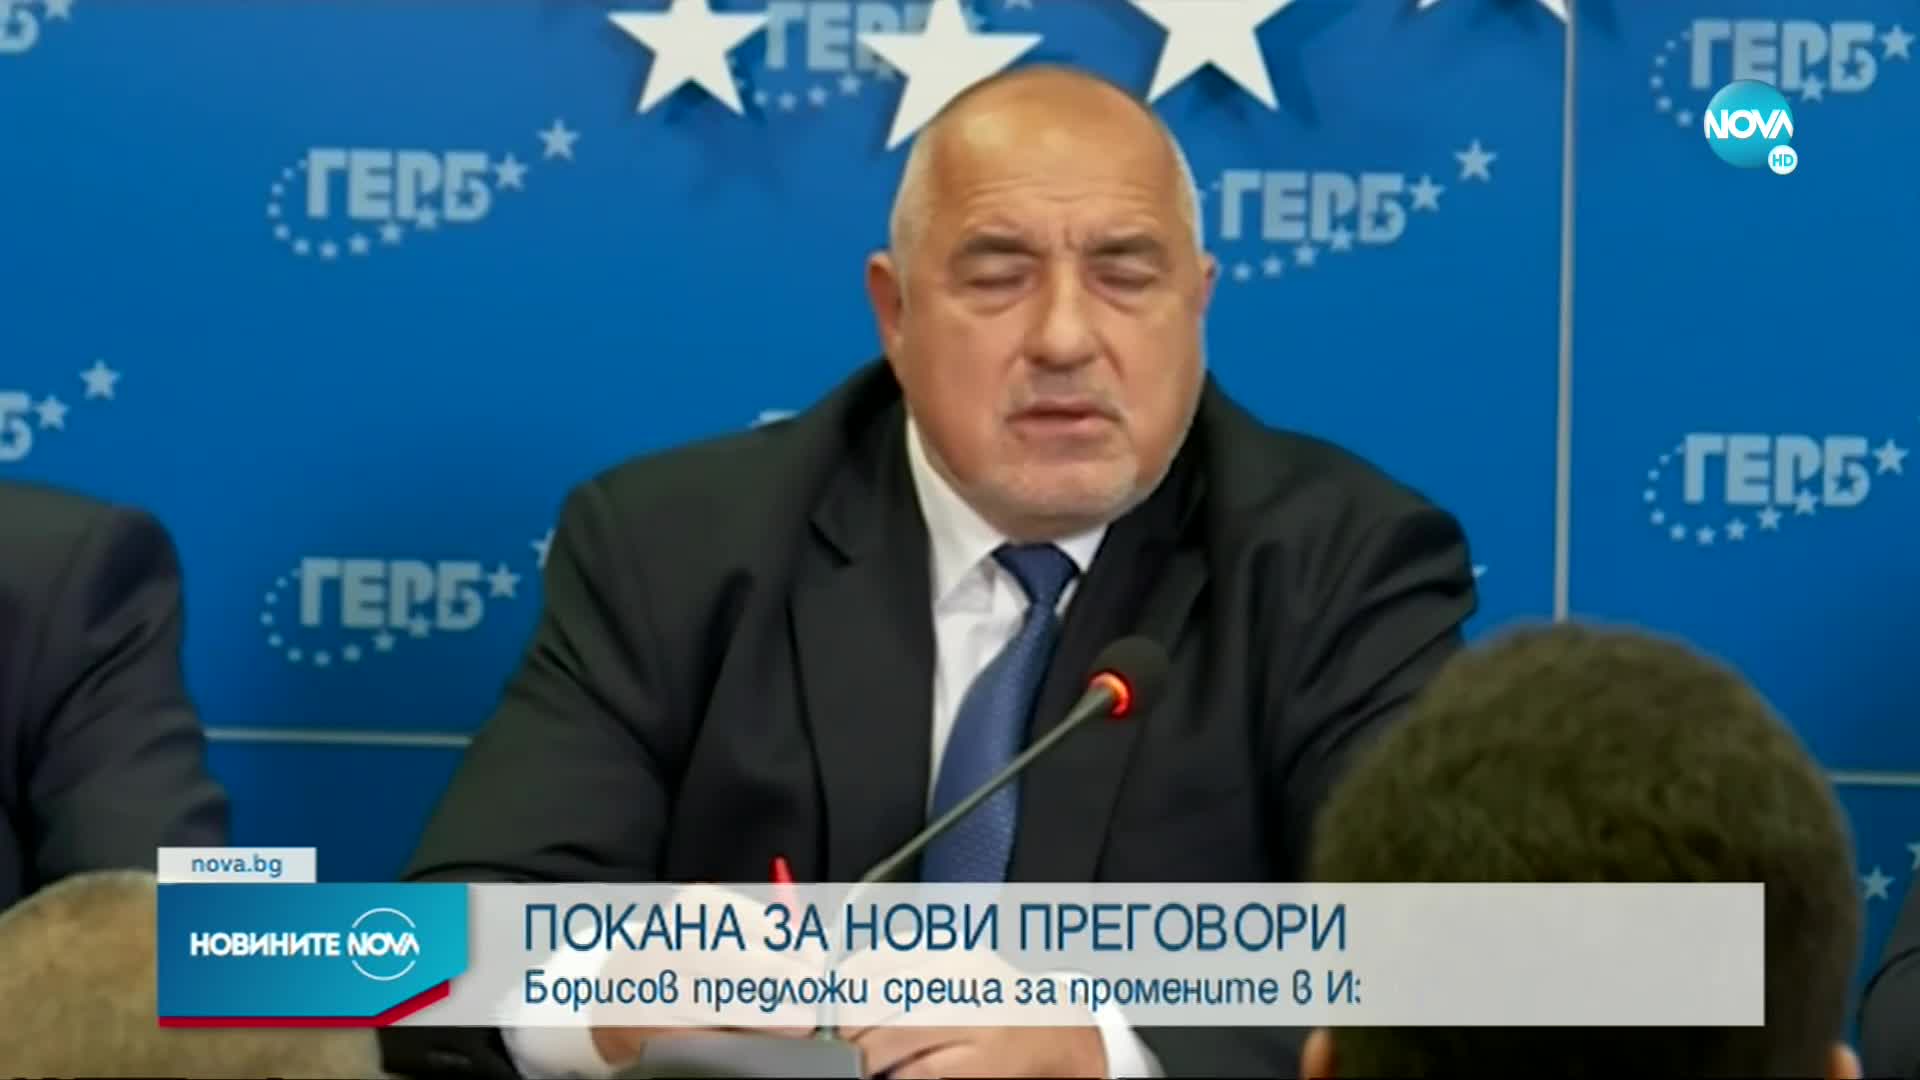 Борисов предложи среща за промените в Изборния кодекс